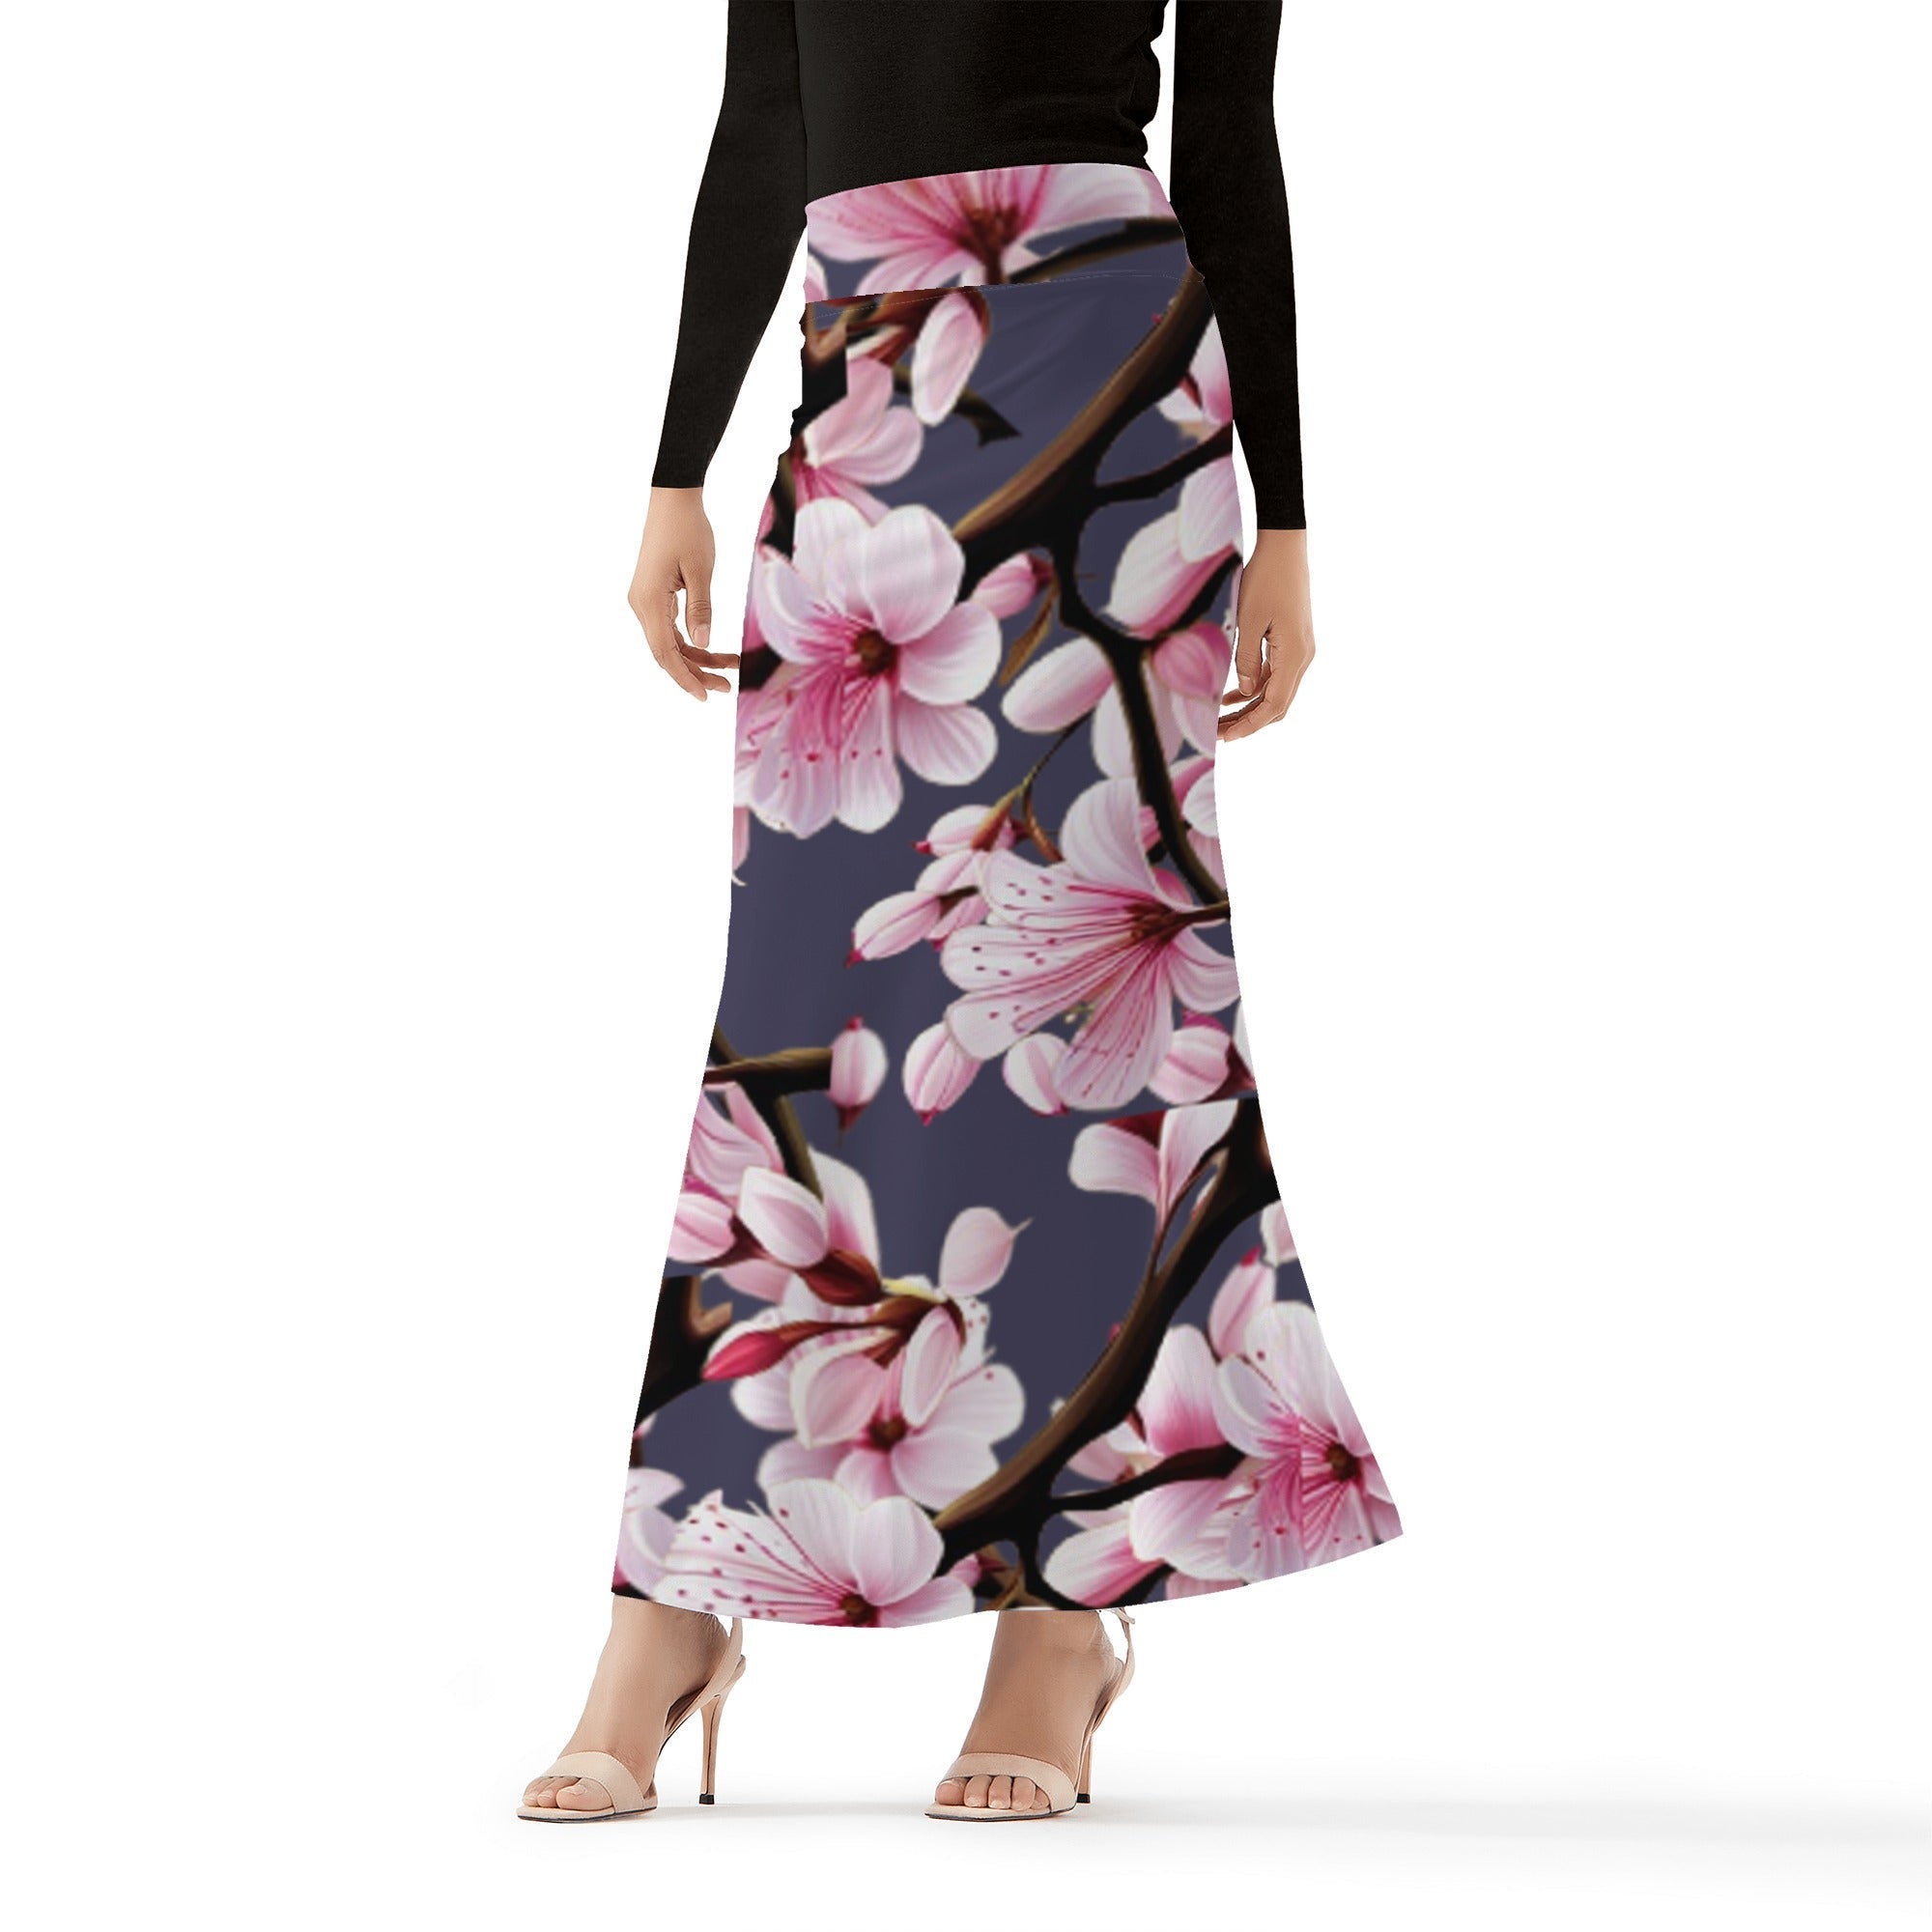 2 - Blue Gray Cherry Blossom Womens Full Length Skirt - 3 colors - women's skirt at TFC&H Co.